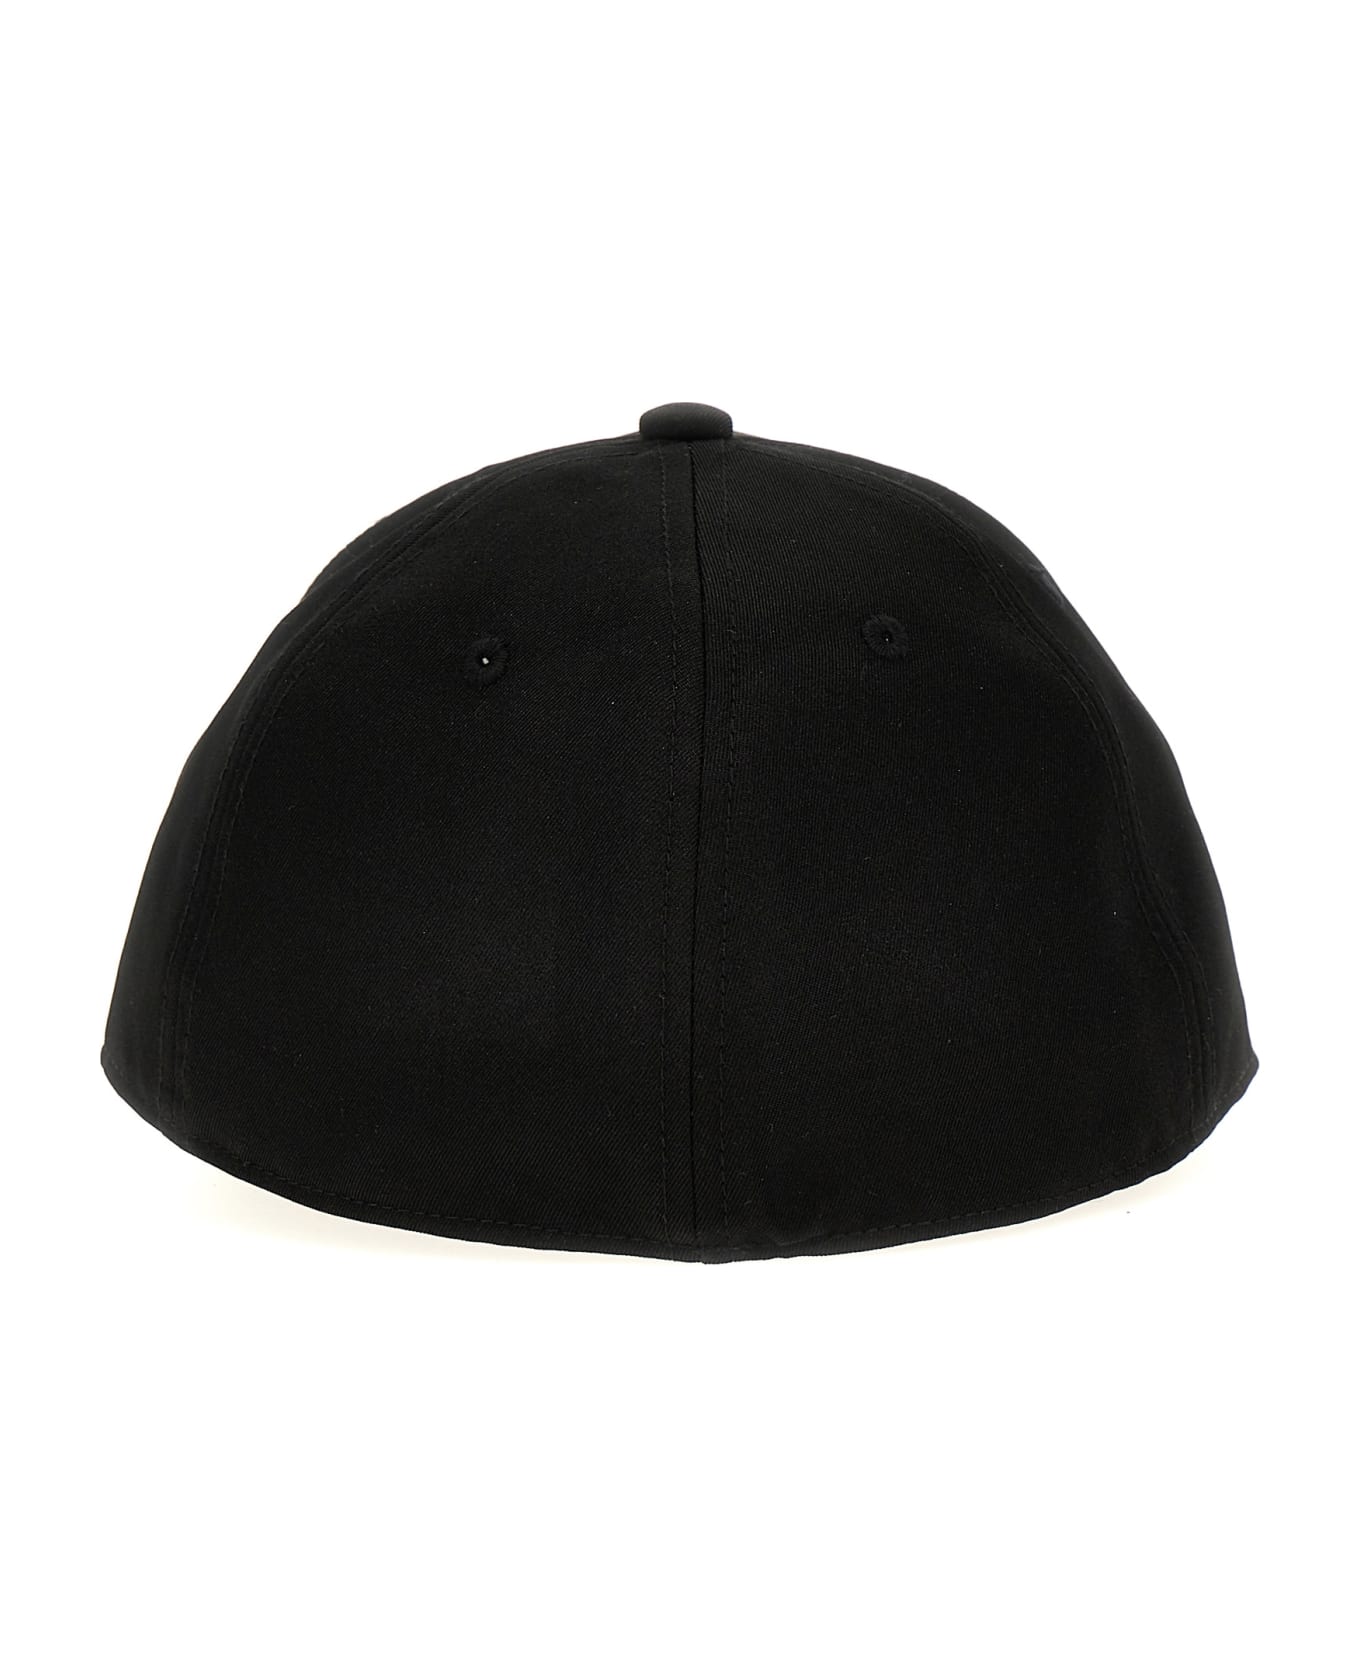 C.P. Company 'metropolis' Cap - Black   帽子